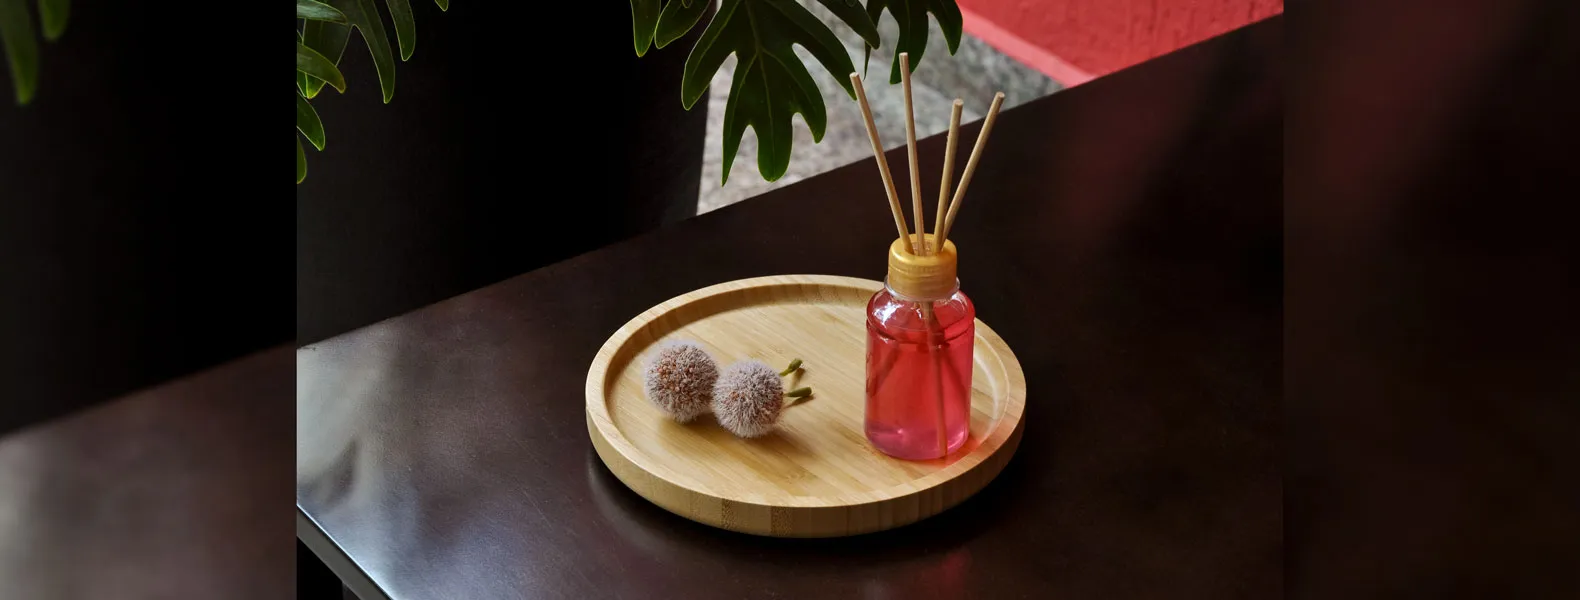 Kit para bandeja e aromatizador. Conta com bandeja redonda em bambu e aromatizador de ambiente com fragrância de cereja e avelã.